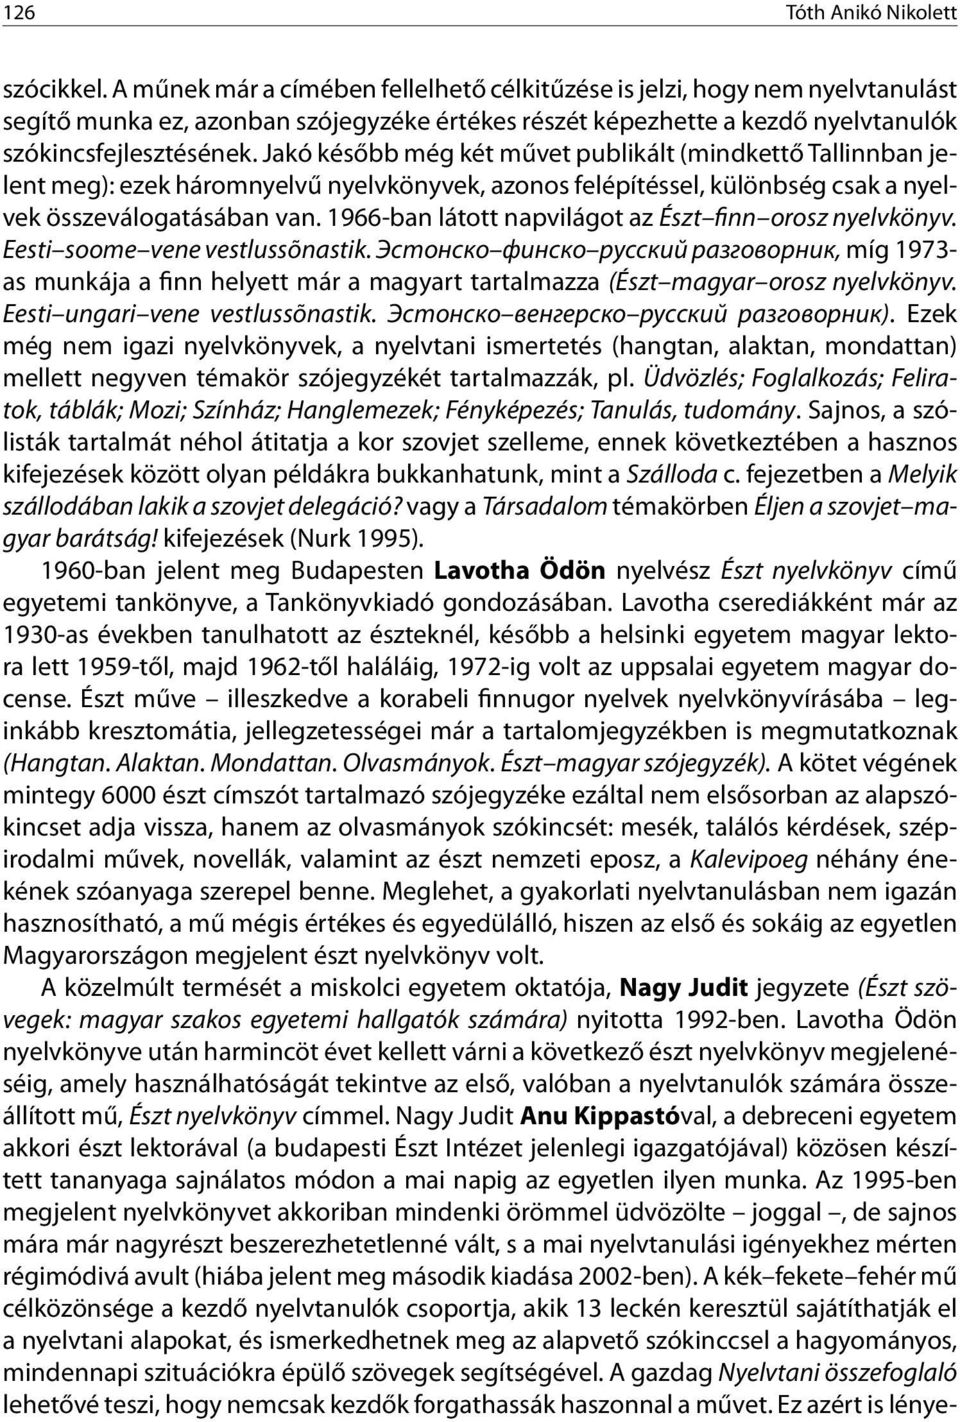 Jakó később még két művet publikált (mindkettő Tallinnban jelent meg): ezek háromnyelvű nyelvkönyvek, azonos felépítéssel, különbség csak a nyelvek összeválogatásában van.